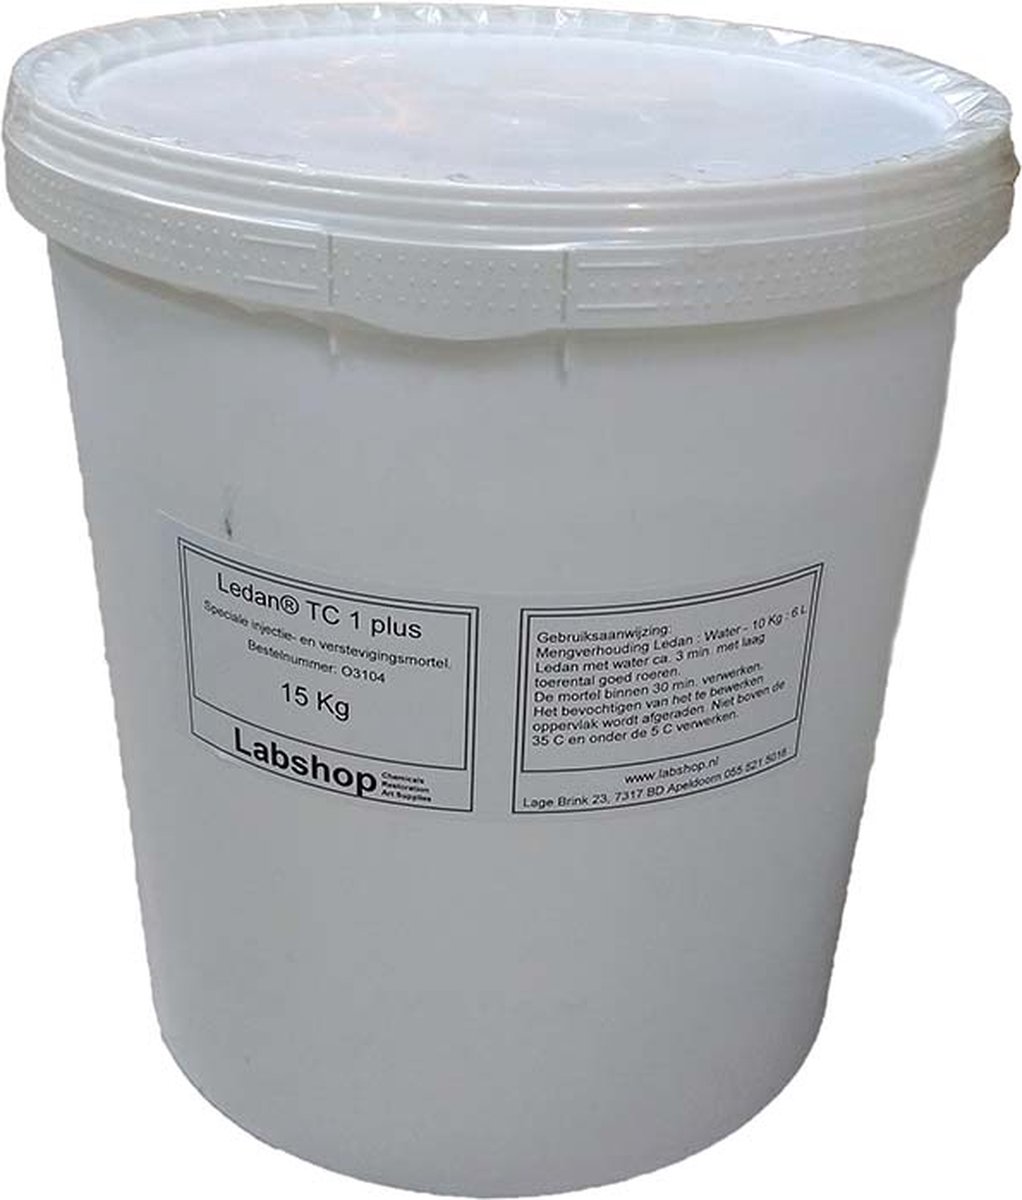 Labshop - Ledan TC 1 plus - 15 kilogram